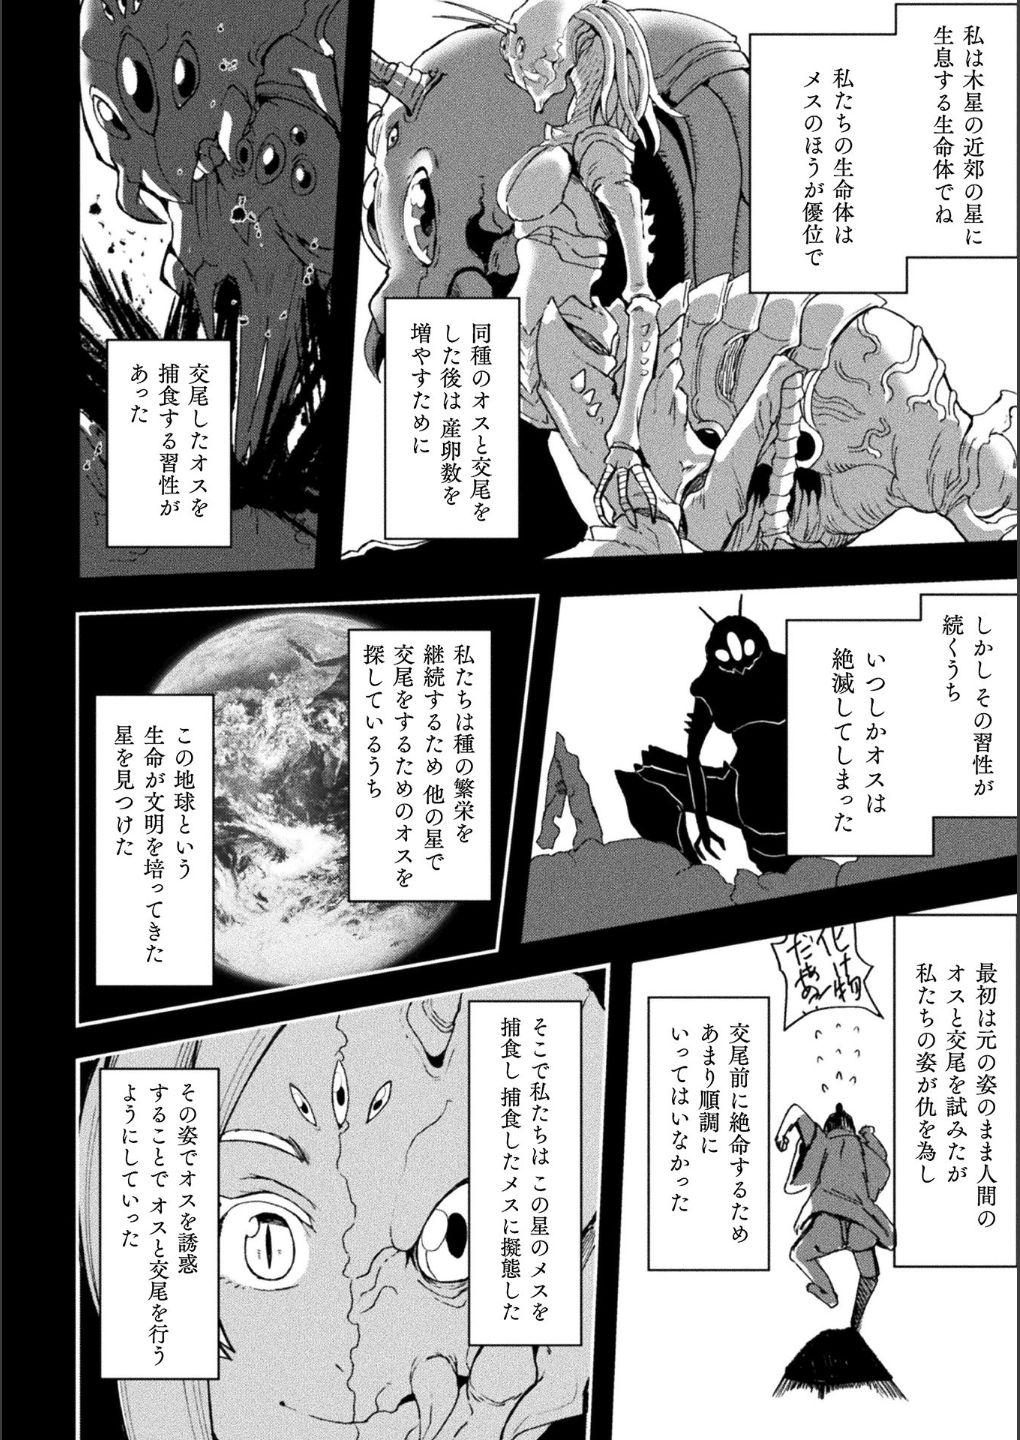 Bessatsu Comic Unreal Bishoujo ni Gitai suru Igyou-tachi Digital Ban Vol. 1 49